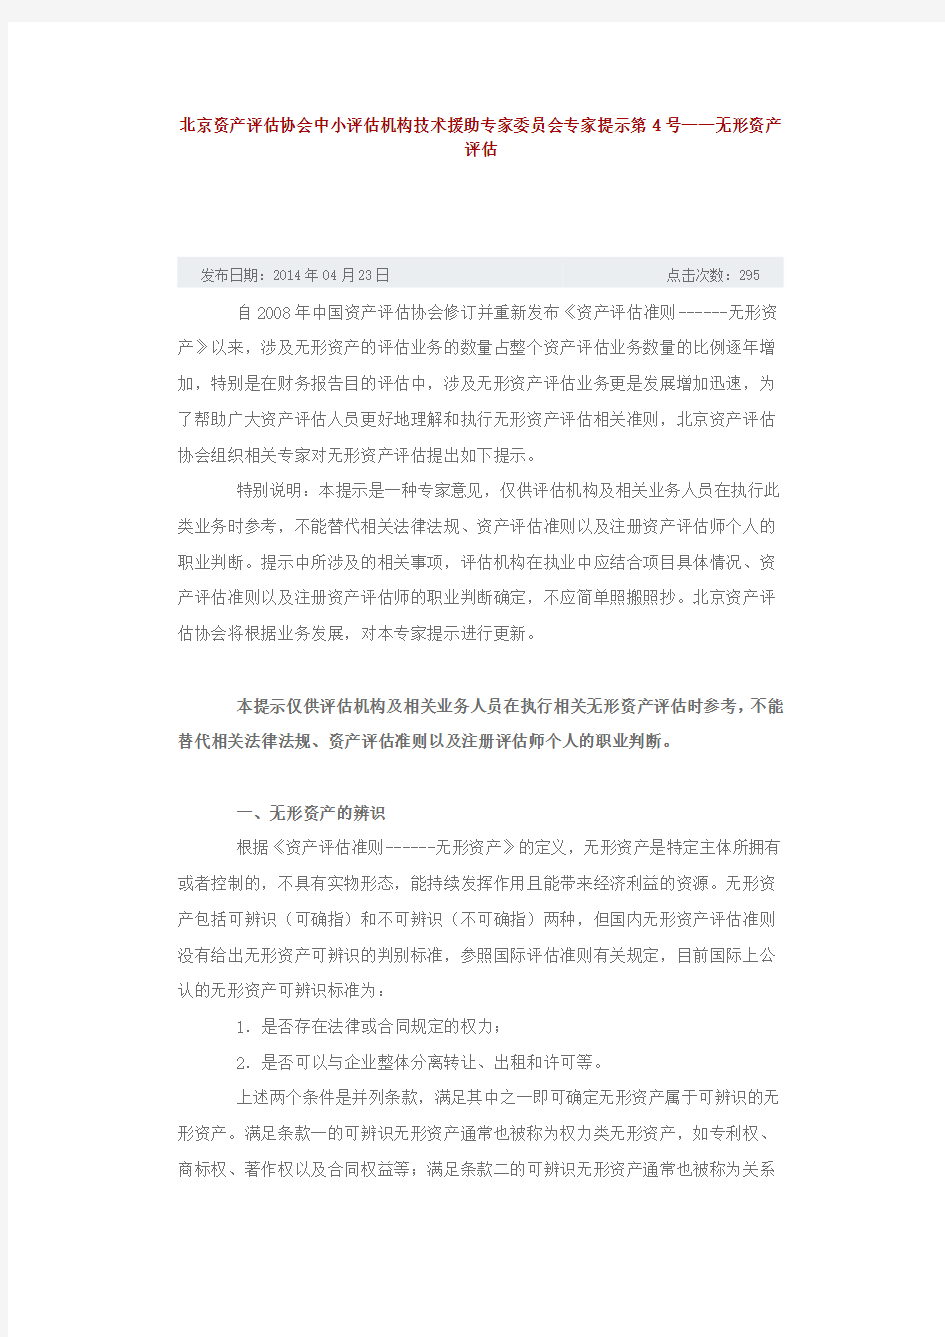 北京资产评估协会中小评估机构技术援助专家委员会专家提示第4号